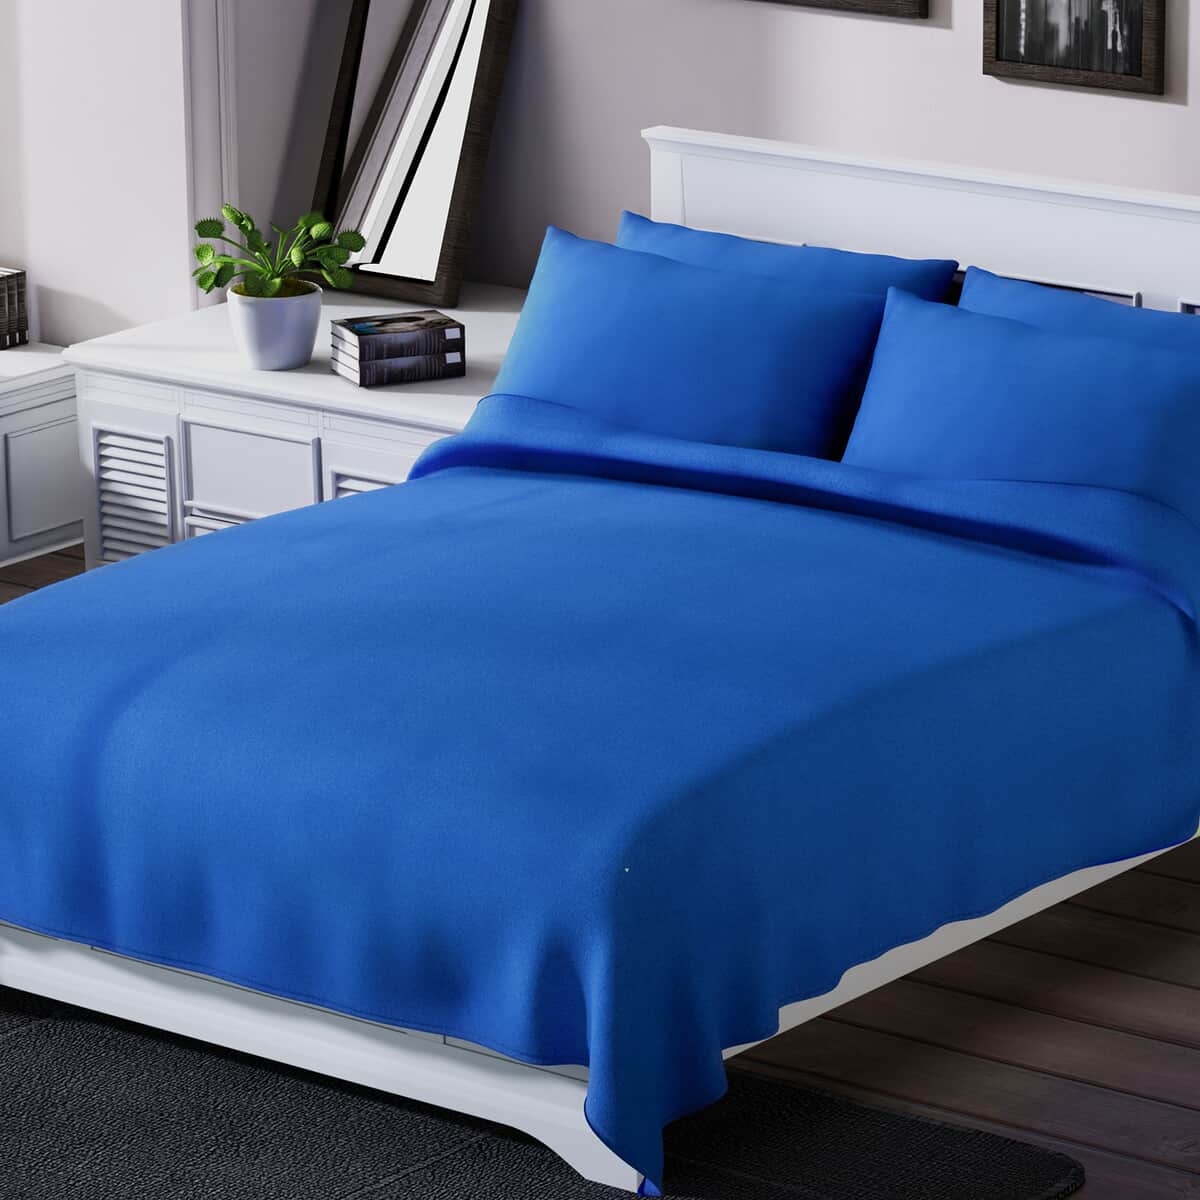 Homesmart Blue Solid 6pcs Microfiber Sheet Set - King, Bed Sheets, Fitted Sheet, Bed Sheet Set, Microfiber Sheets image number 1